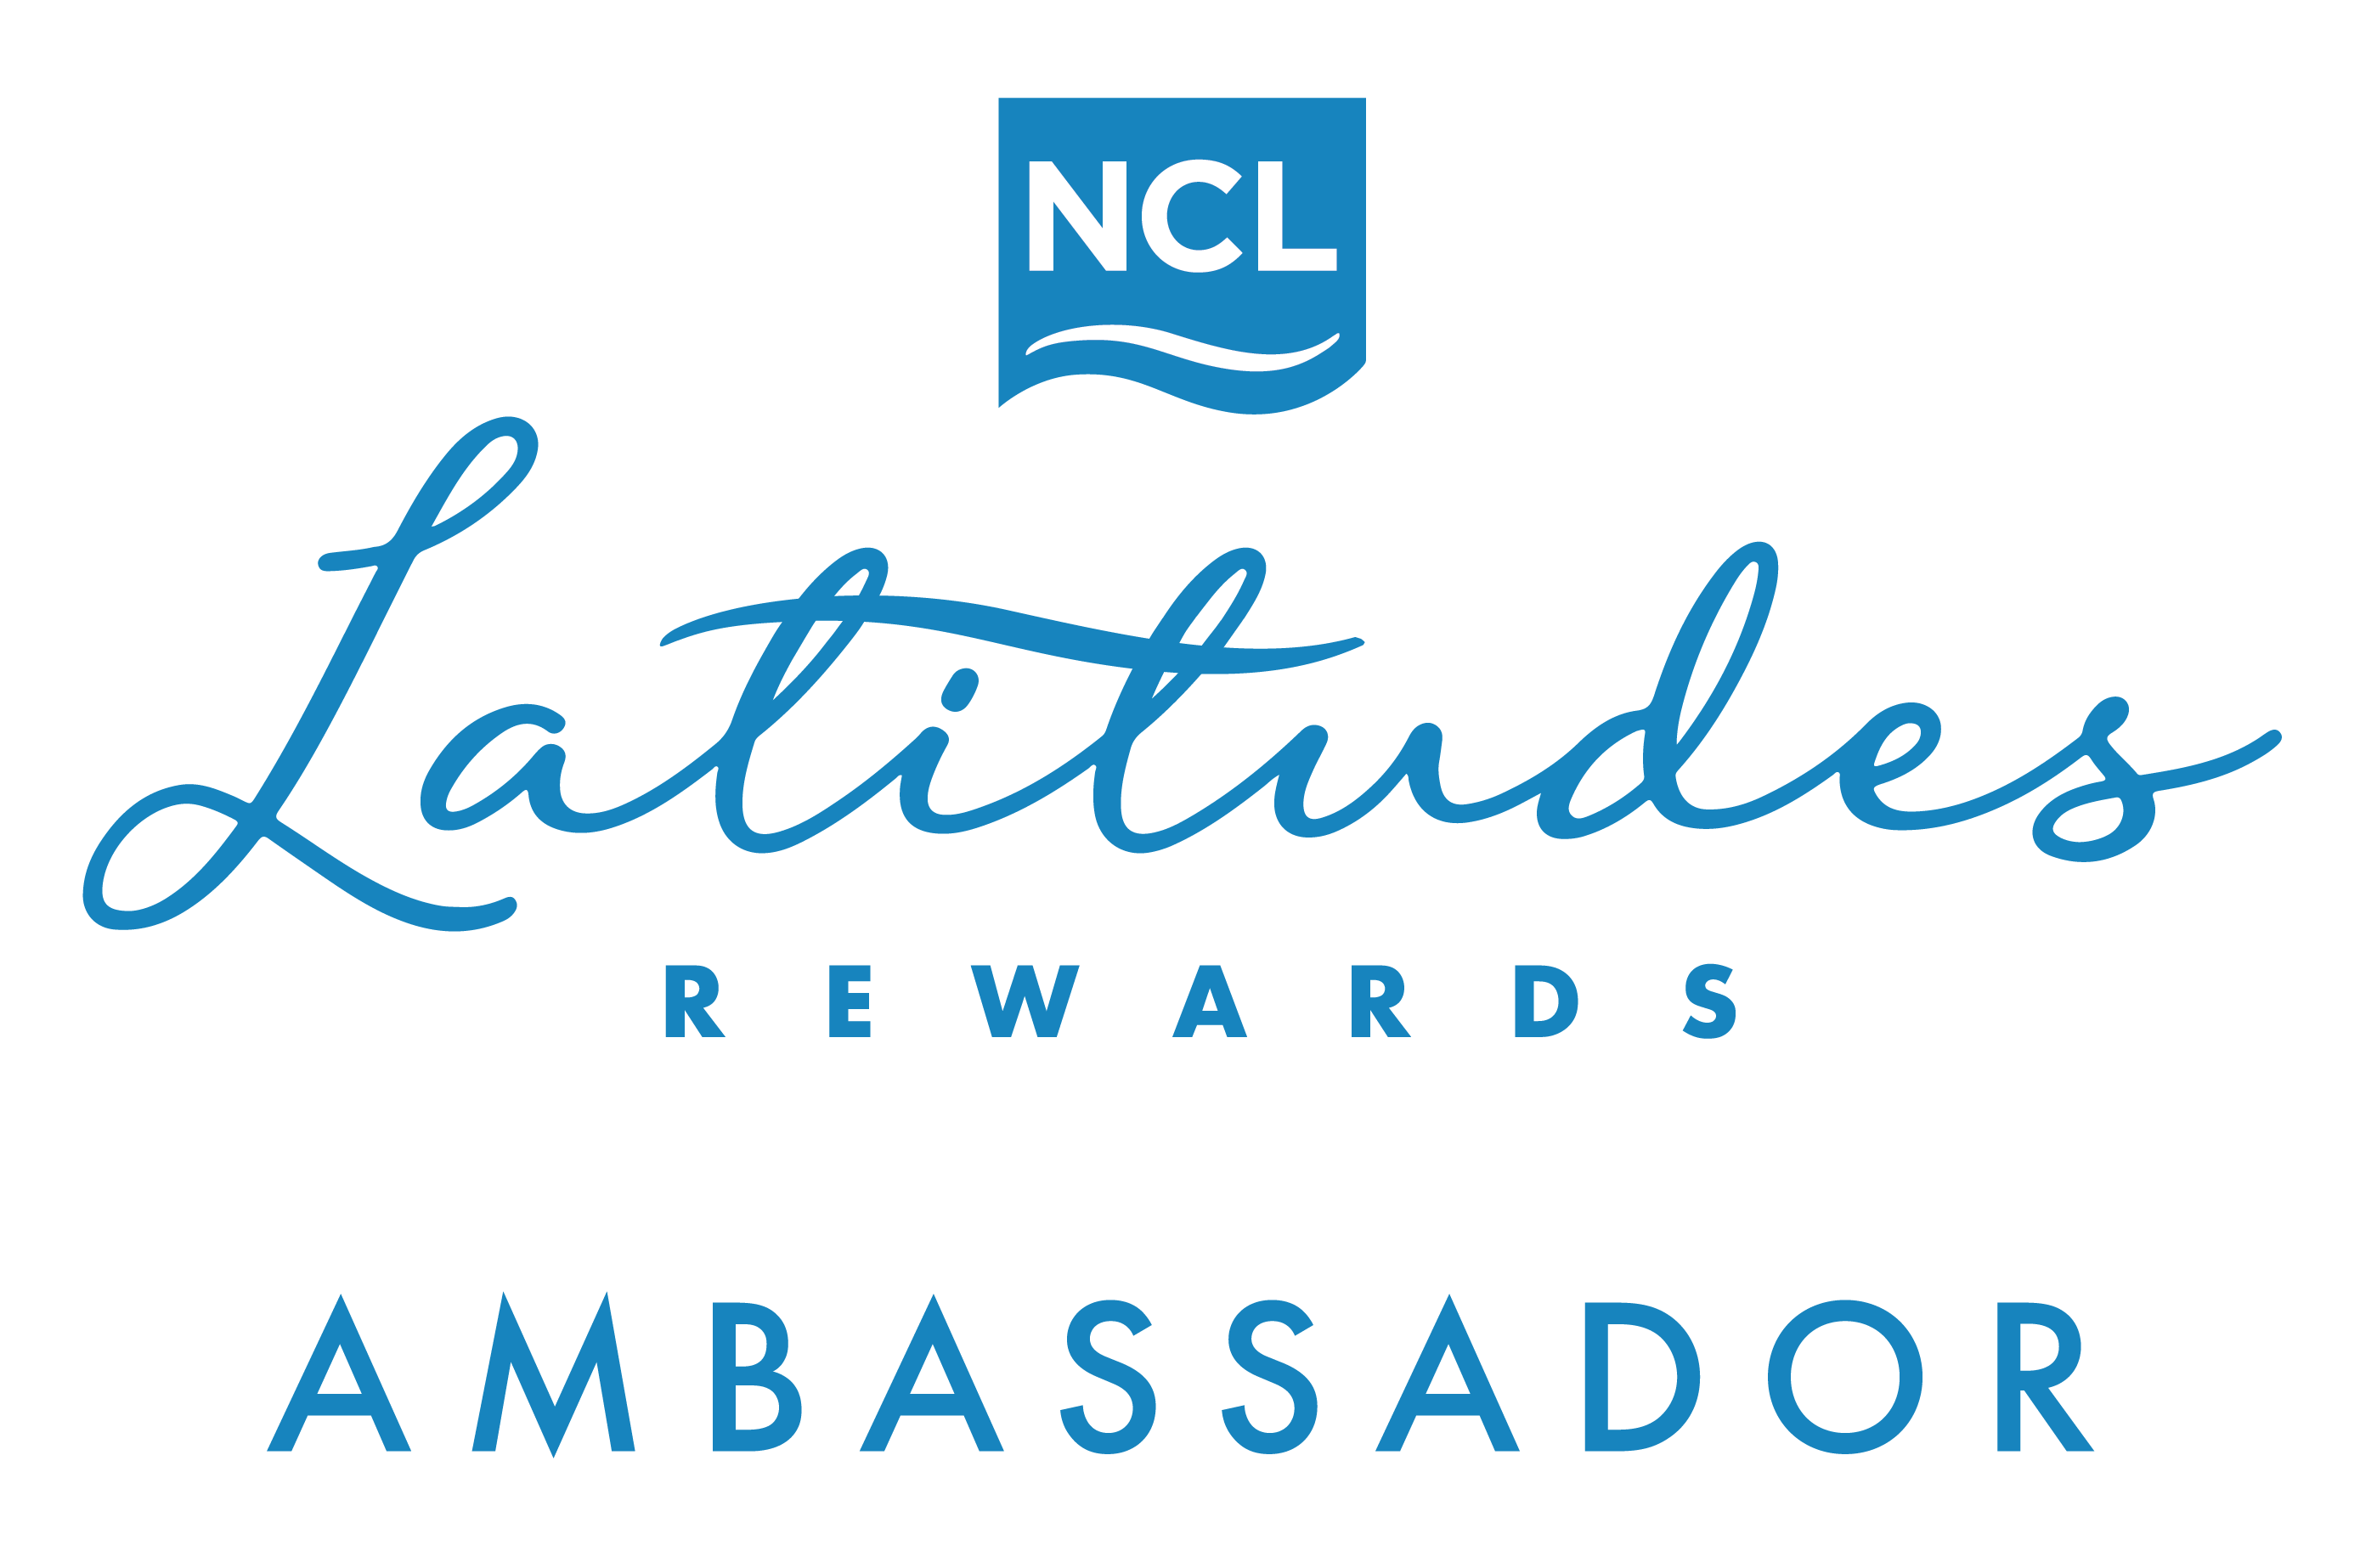 Ambassador-Logo